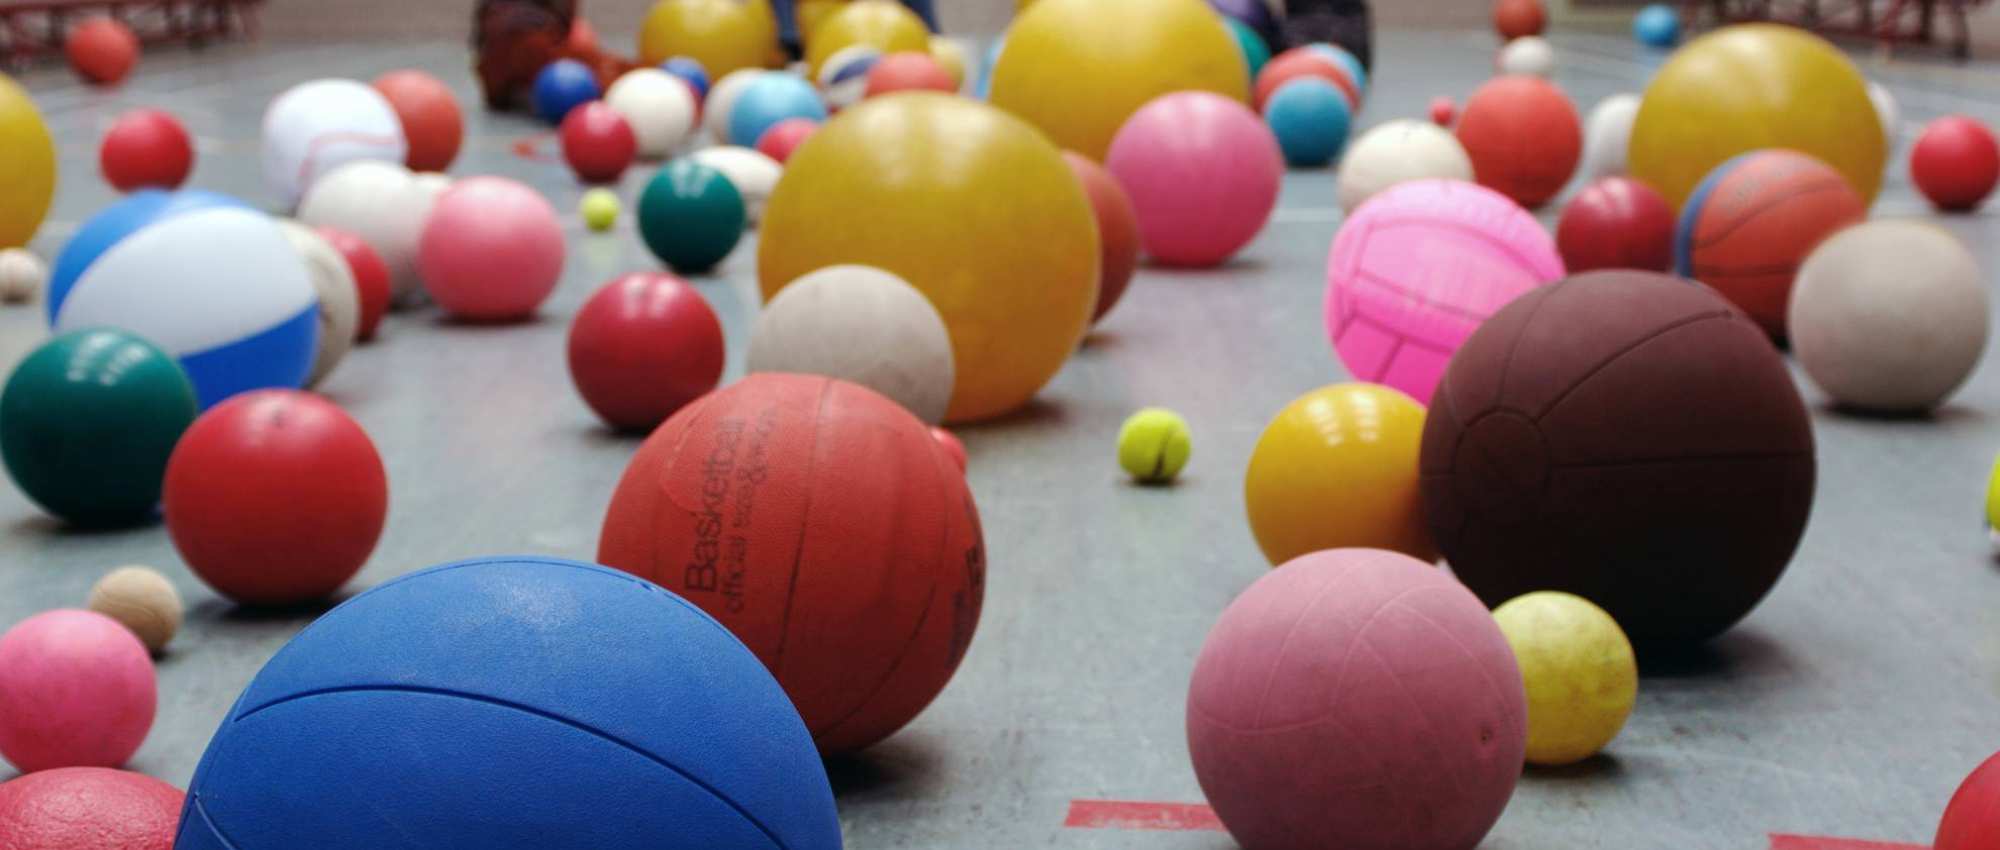 grote hoeveelheid ballen in zaalÂ voor psycho motorische training